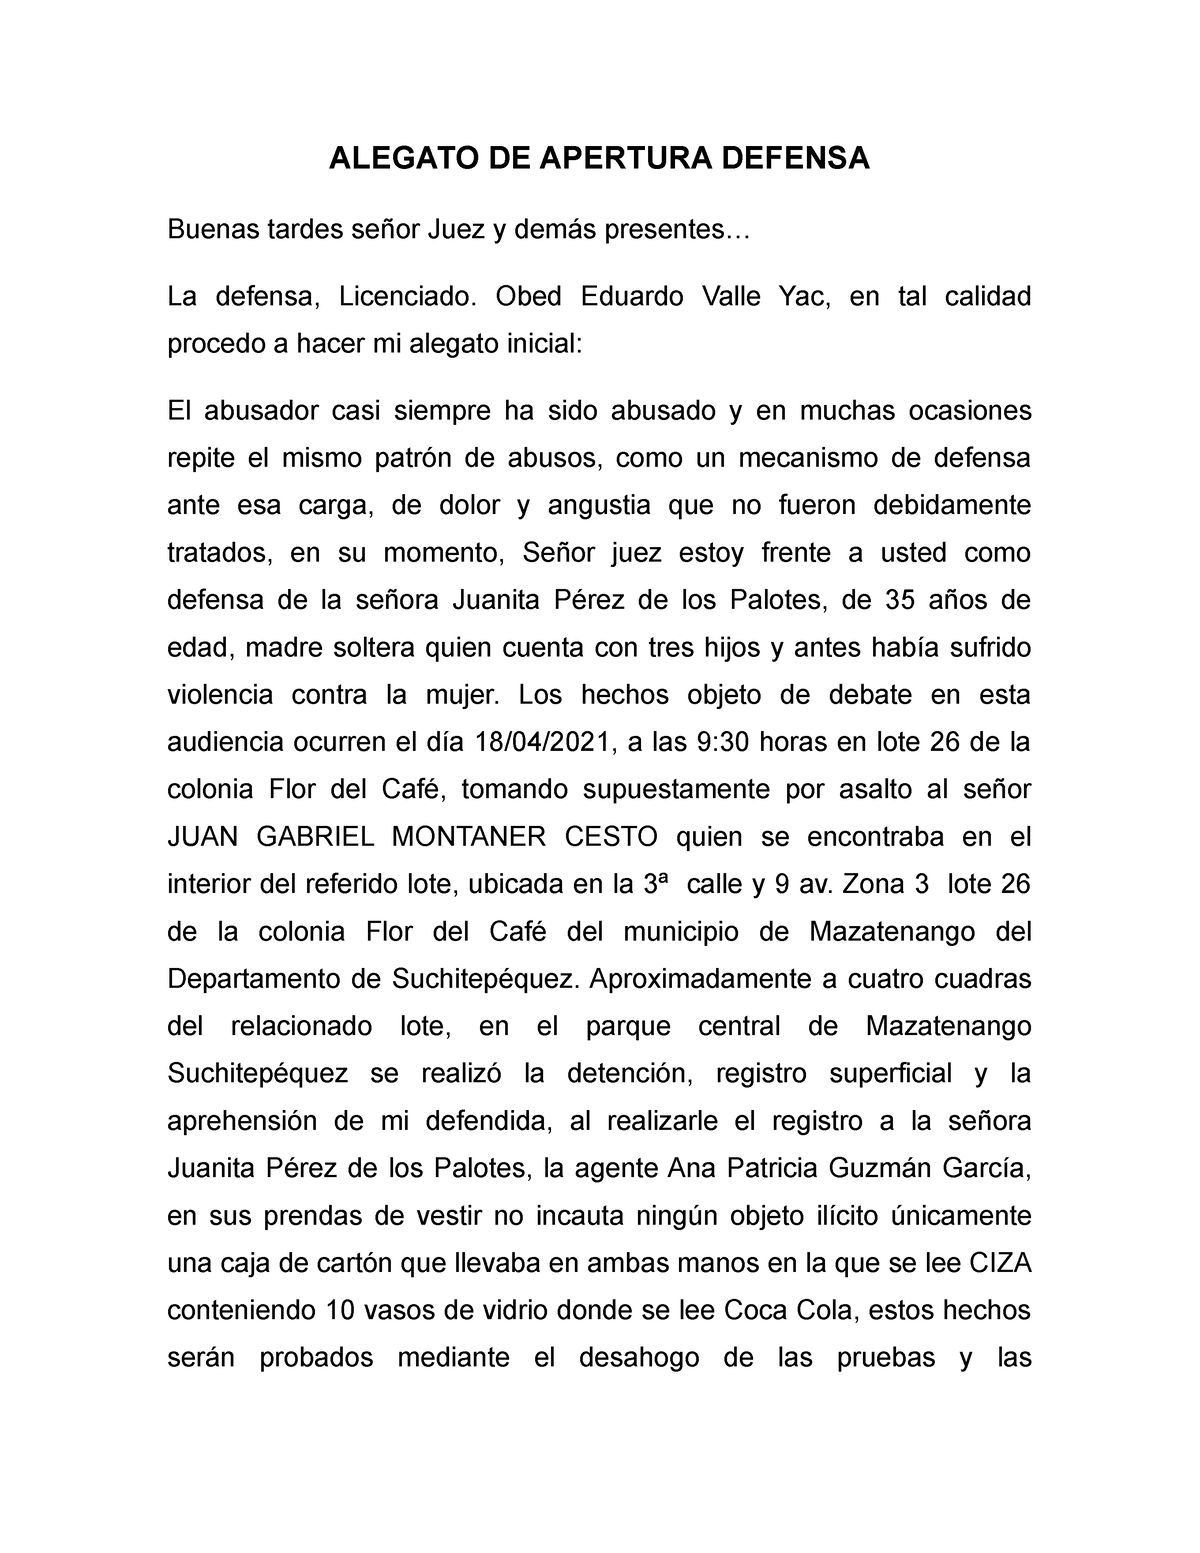 Alegato DE Apertura Abogado Defensor en un proceso Oral y Público - ALEGATO  DE APERTURA DEFENSA - Studocu